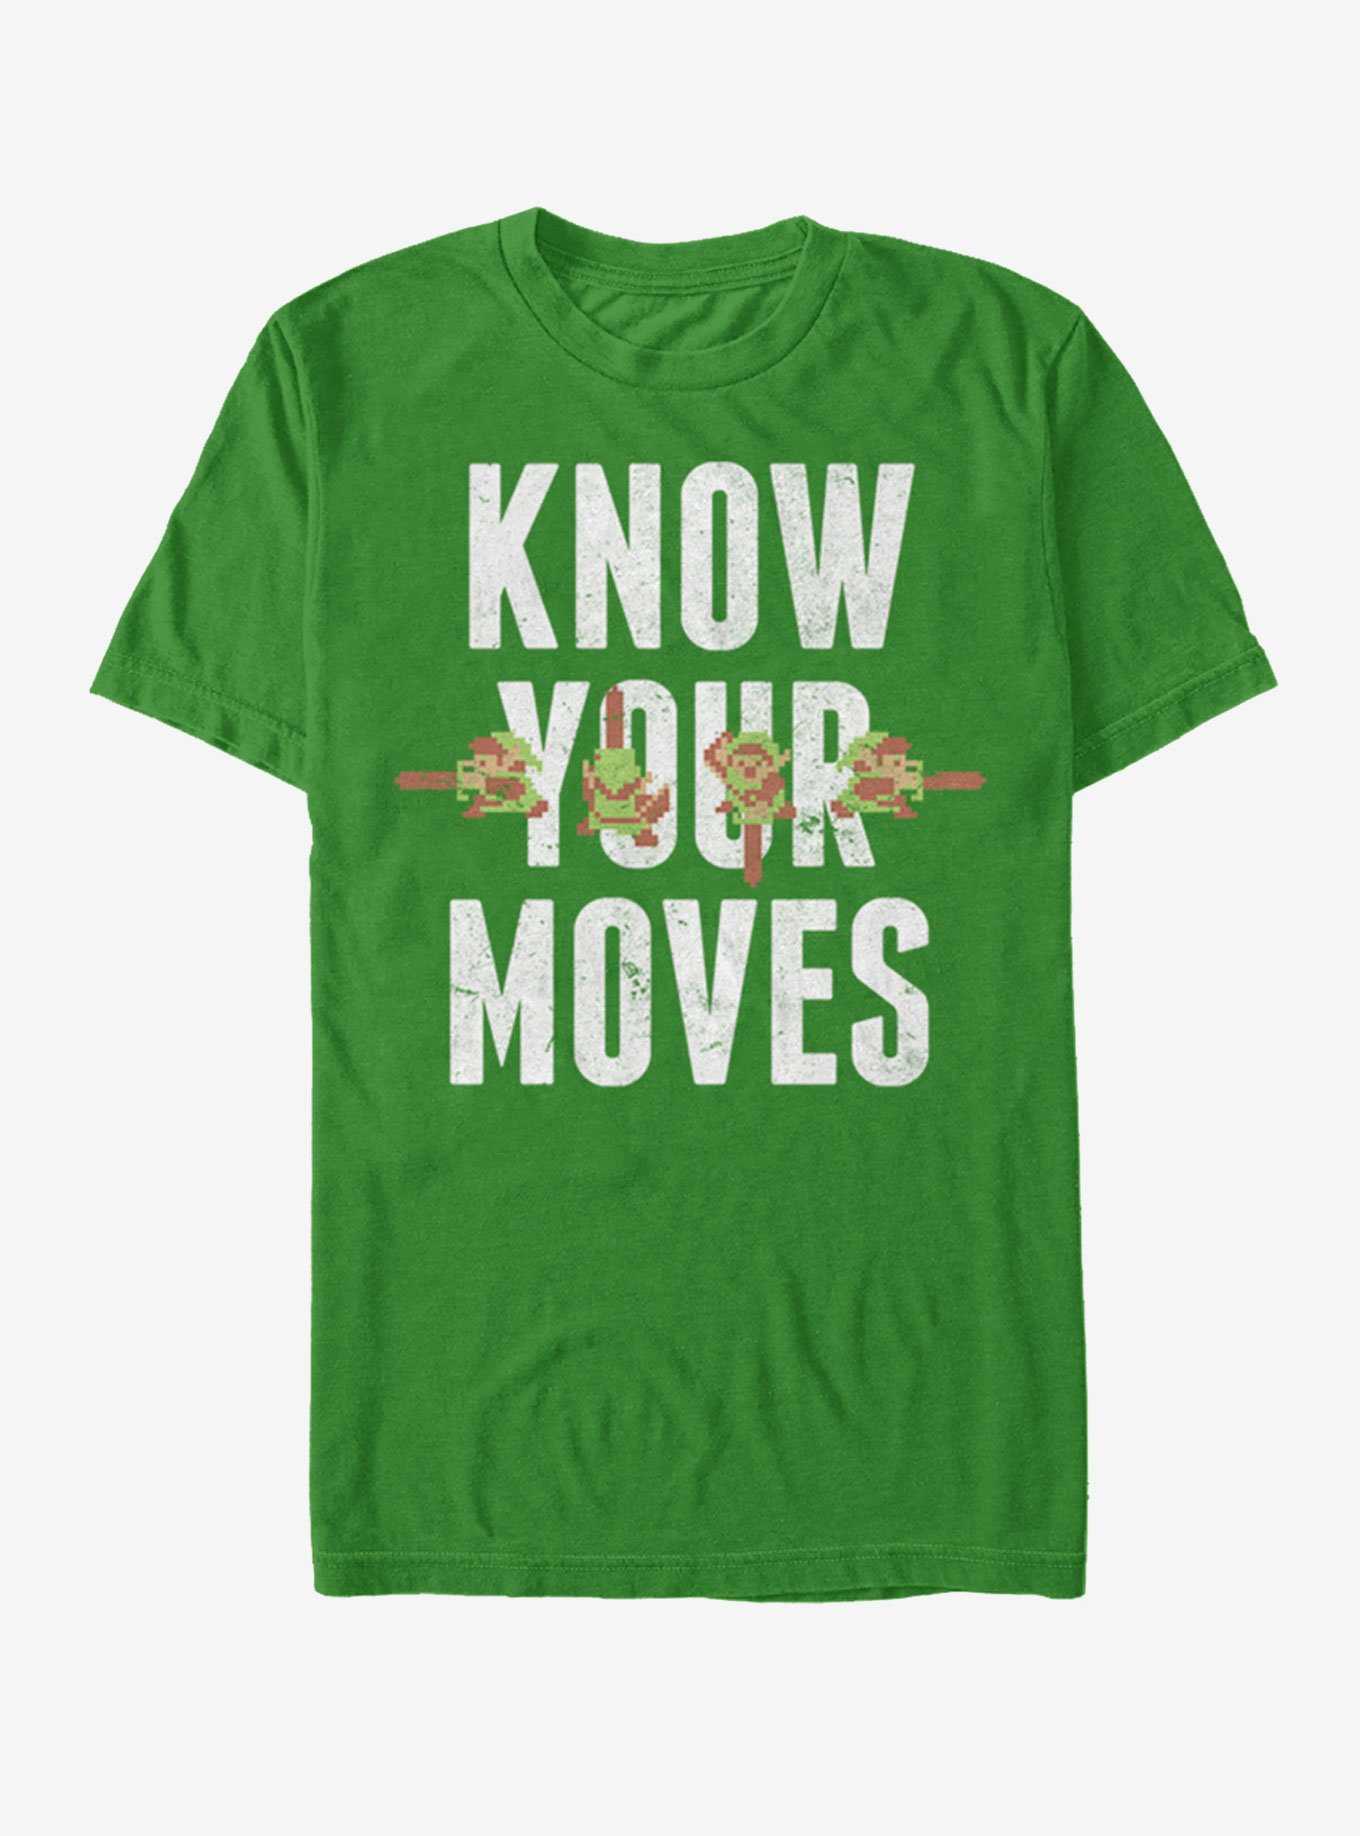 Nintendo Legend of Zelda Know Your Moves T-Shirt, , hi-res